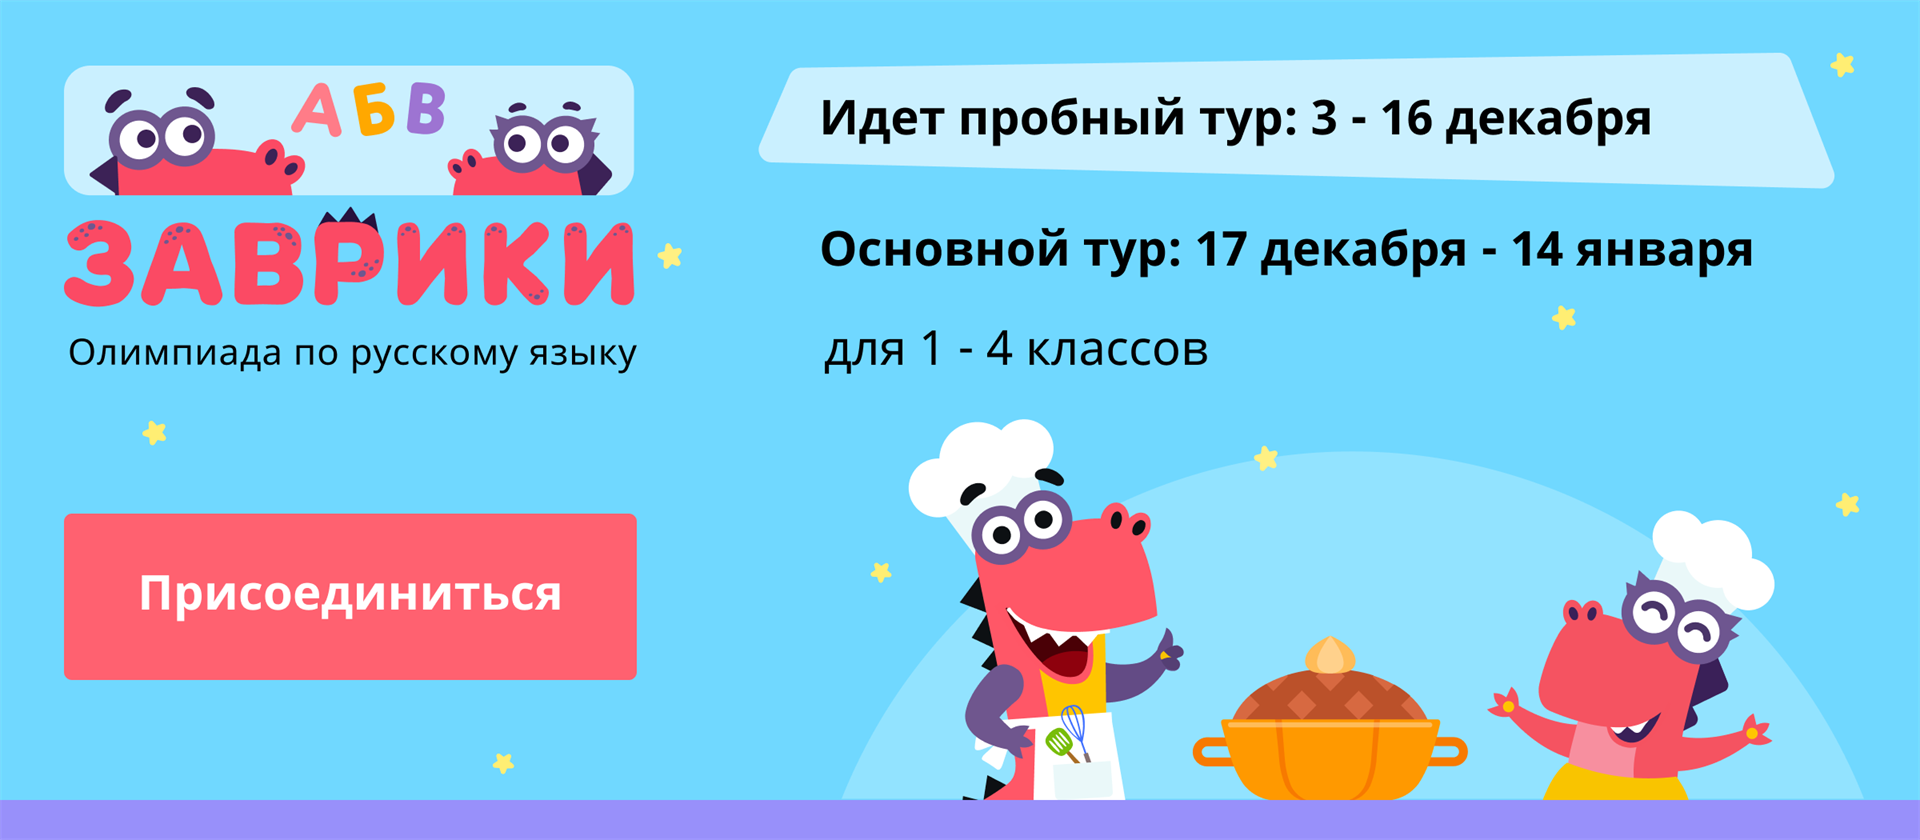 Учи ру 1 г. Учи ру. Основной тур. Пробный тур. Учи ру русский язык.